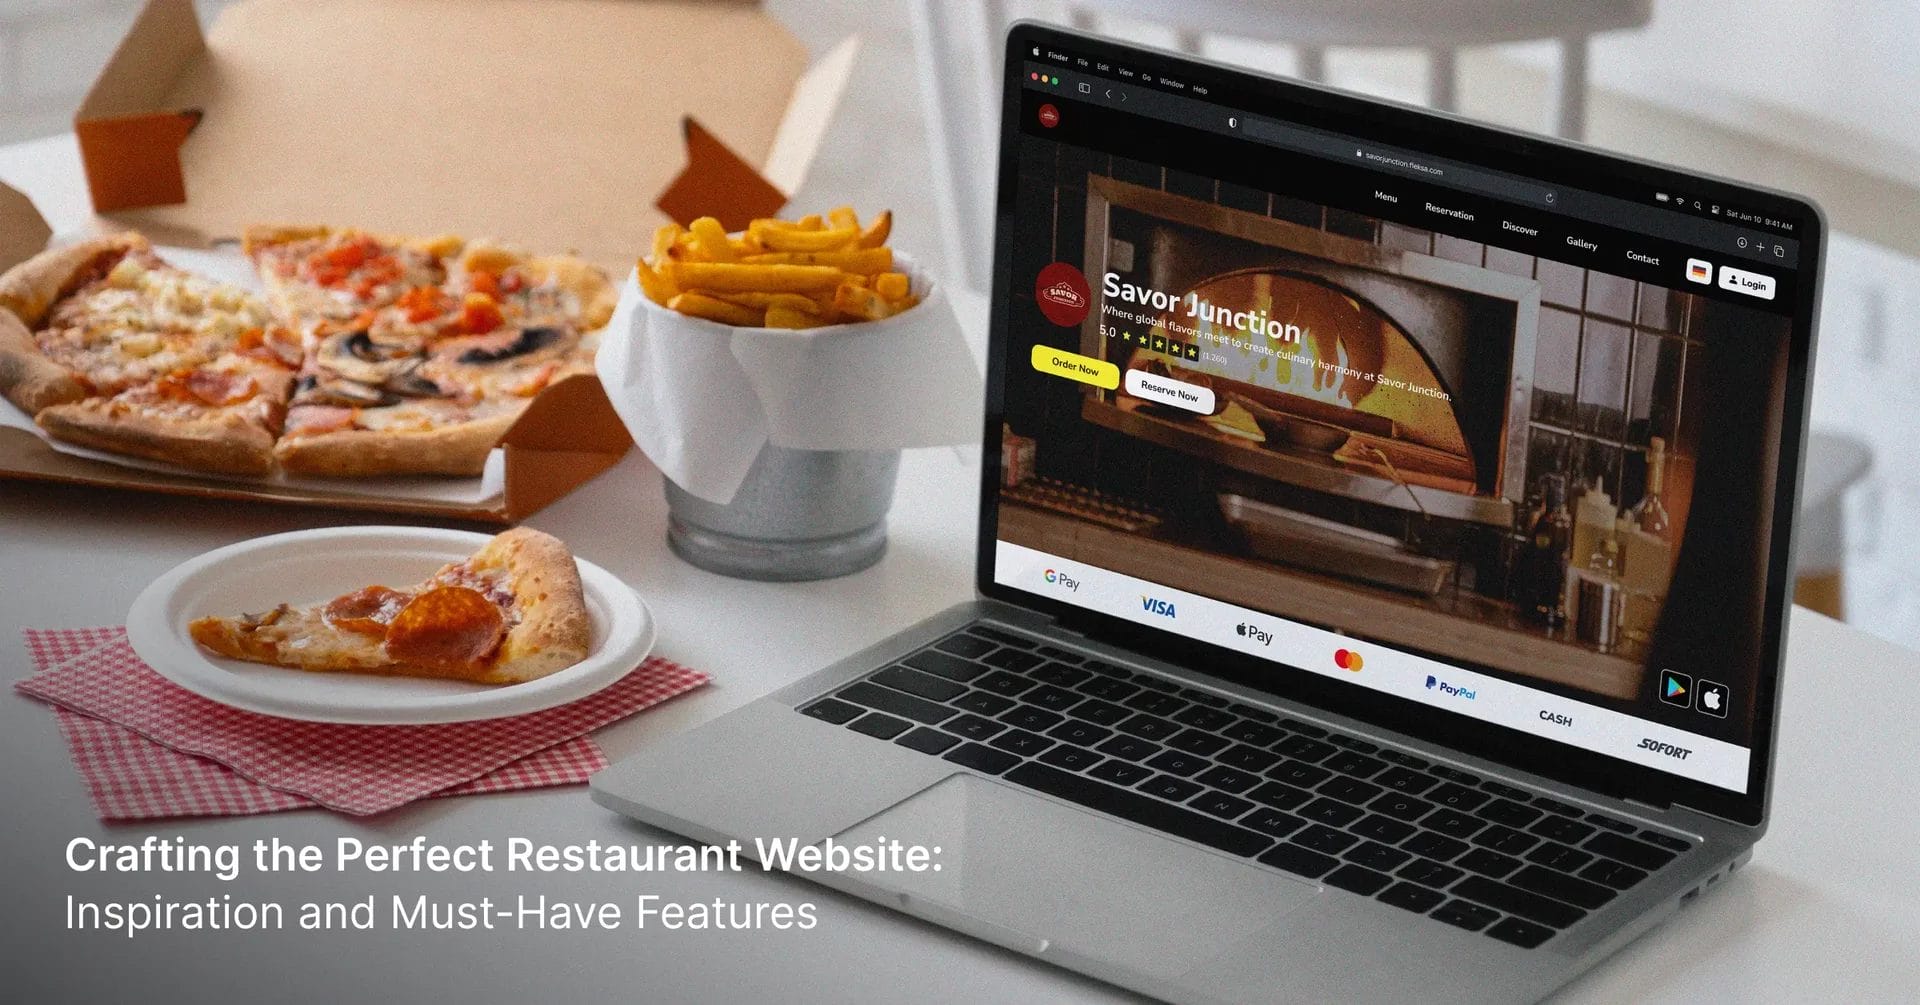 Gestaltung der perfekten Restaurant Website: Inspiration und Must-Have-Funktionen